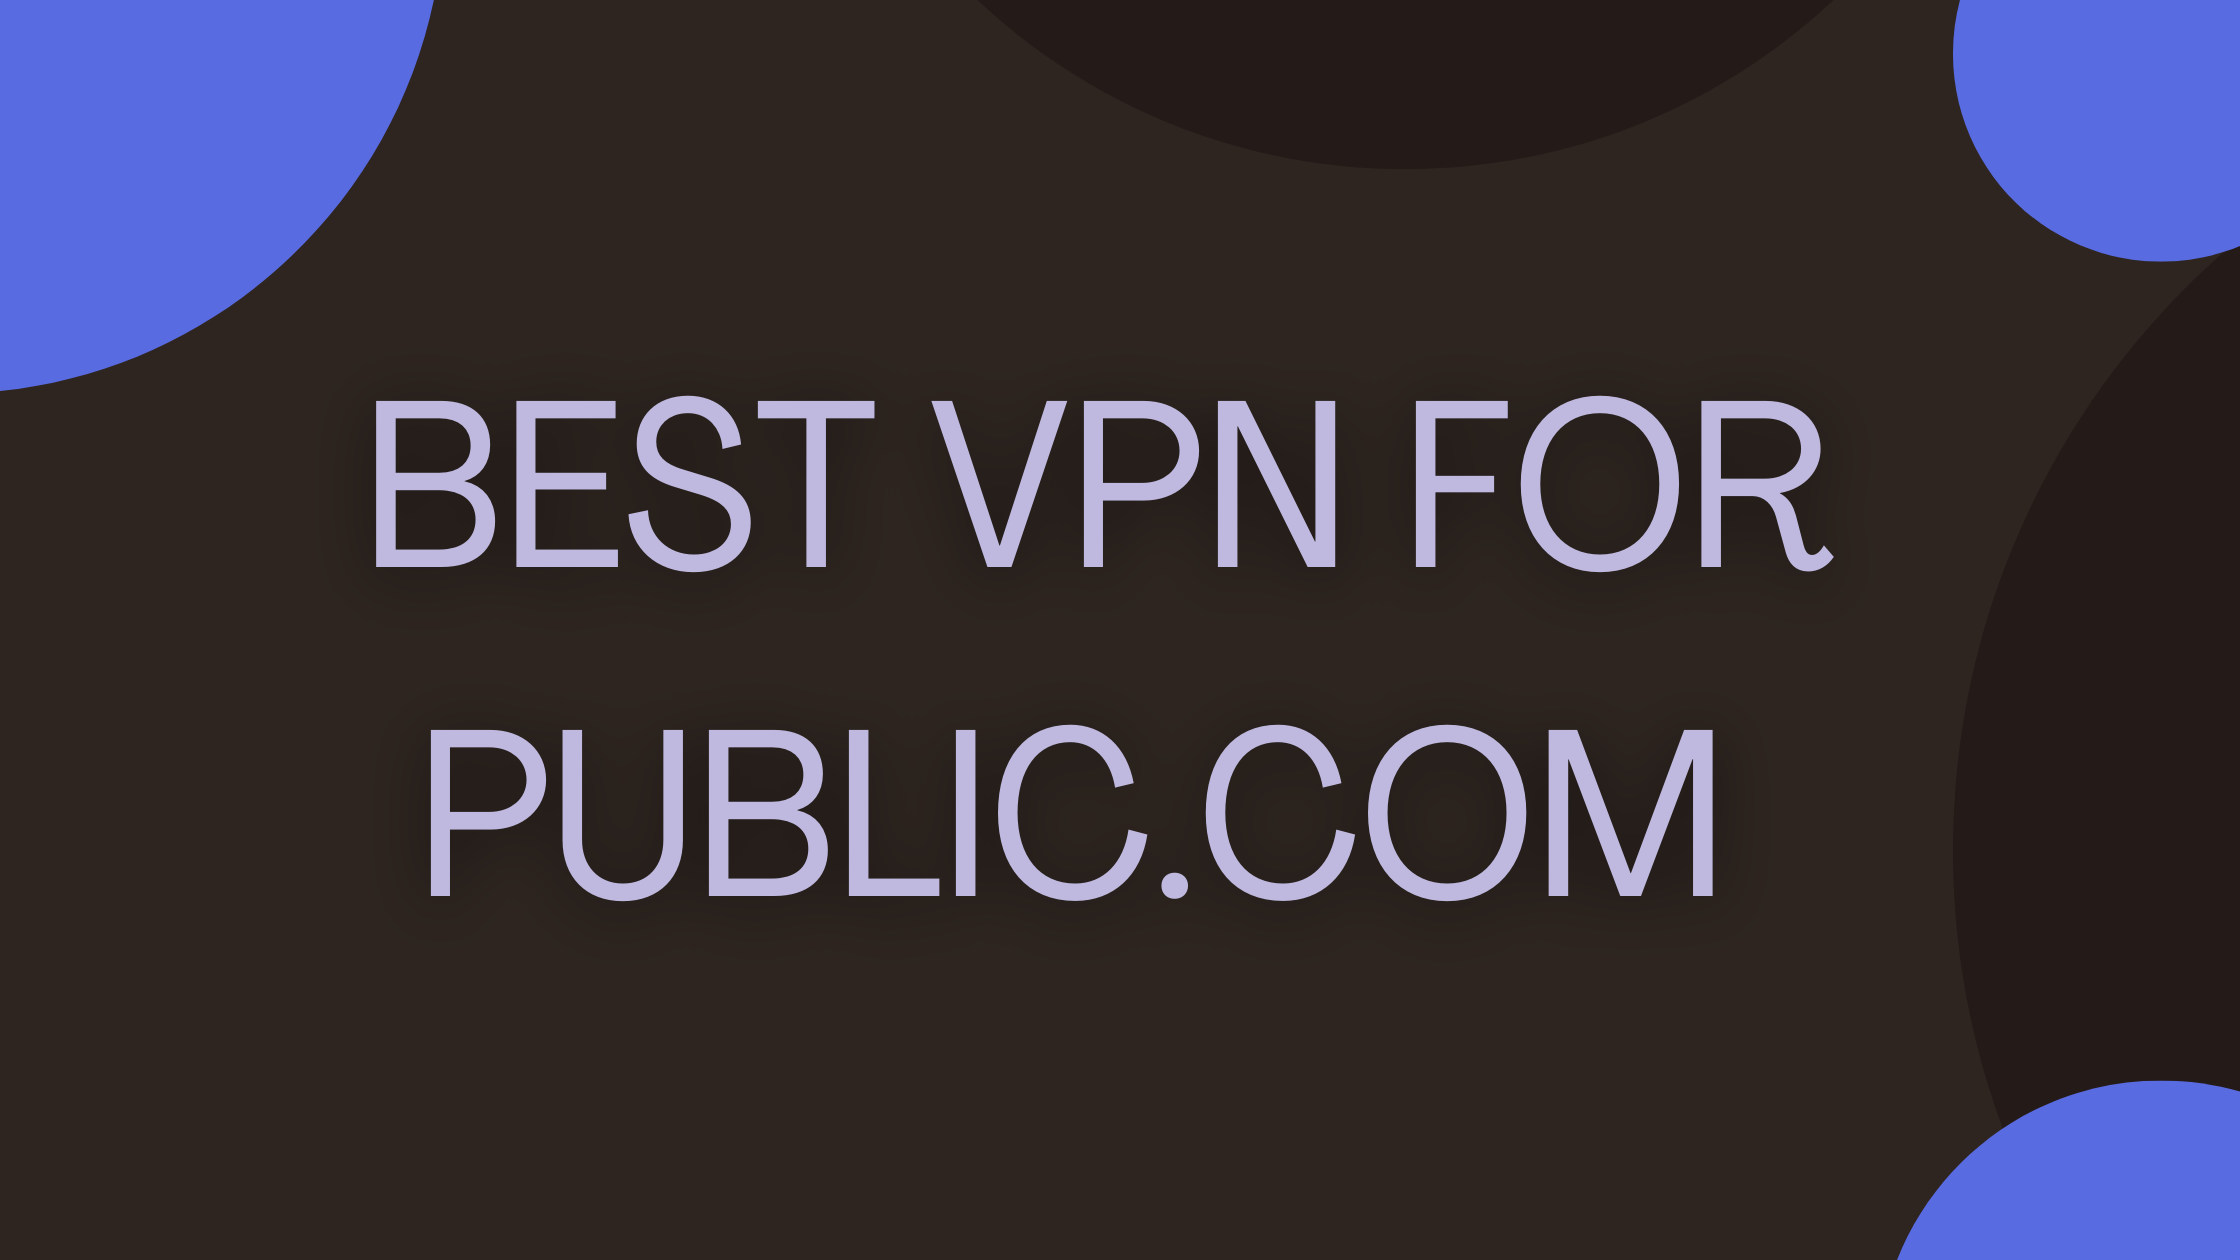 7 Best VPN for Public.com to Make Safe Investments